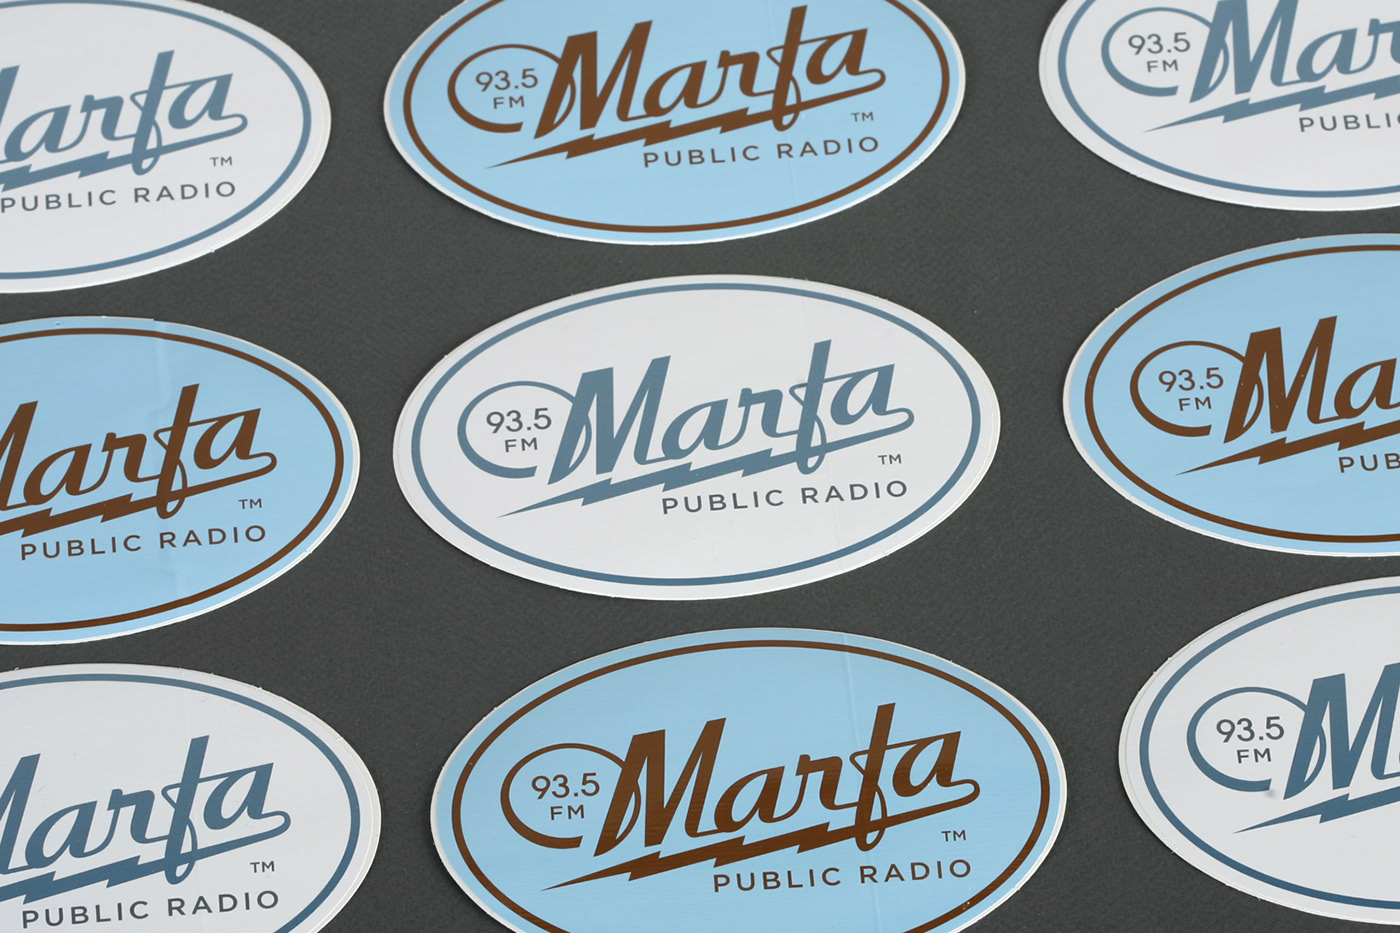 Marfa Public Radio logos